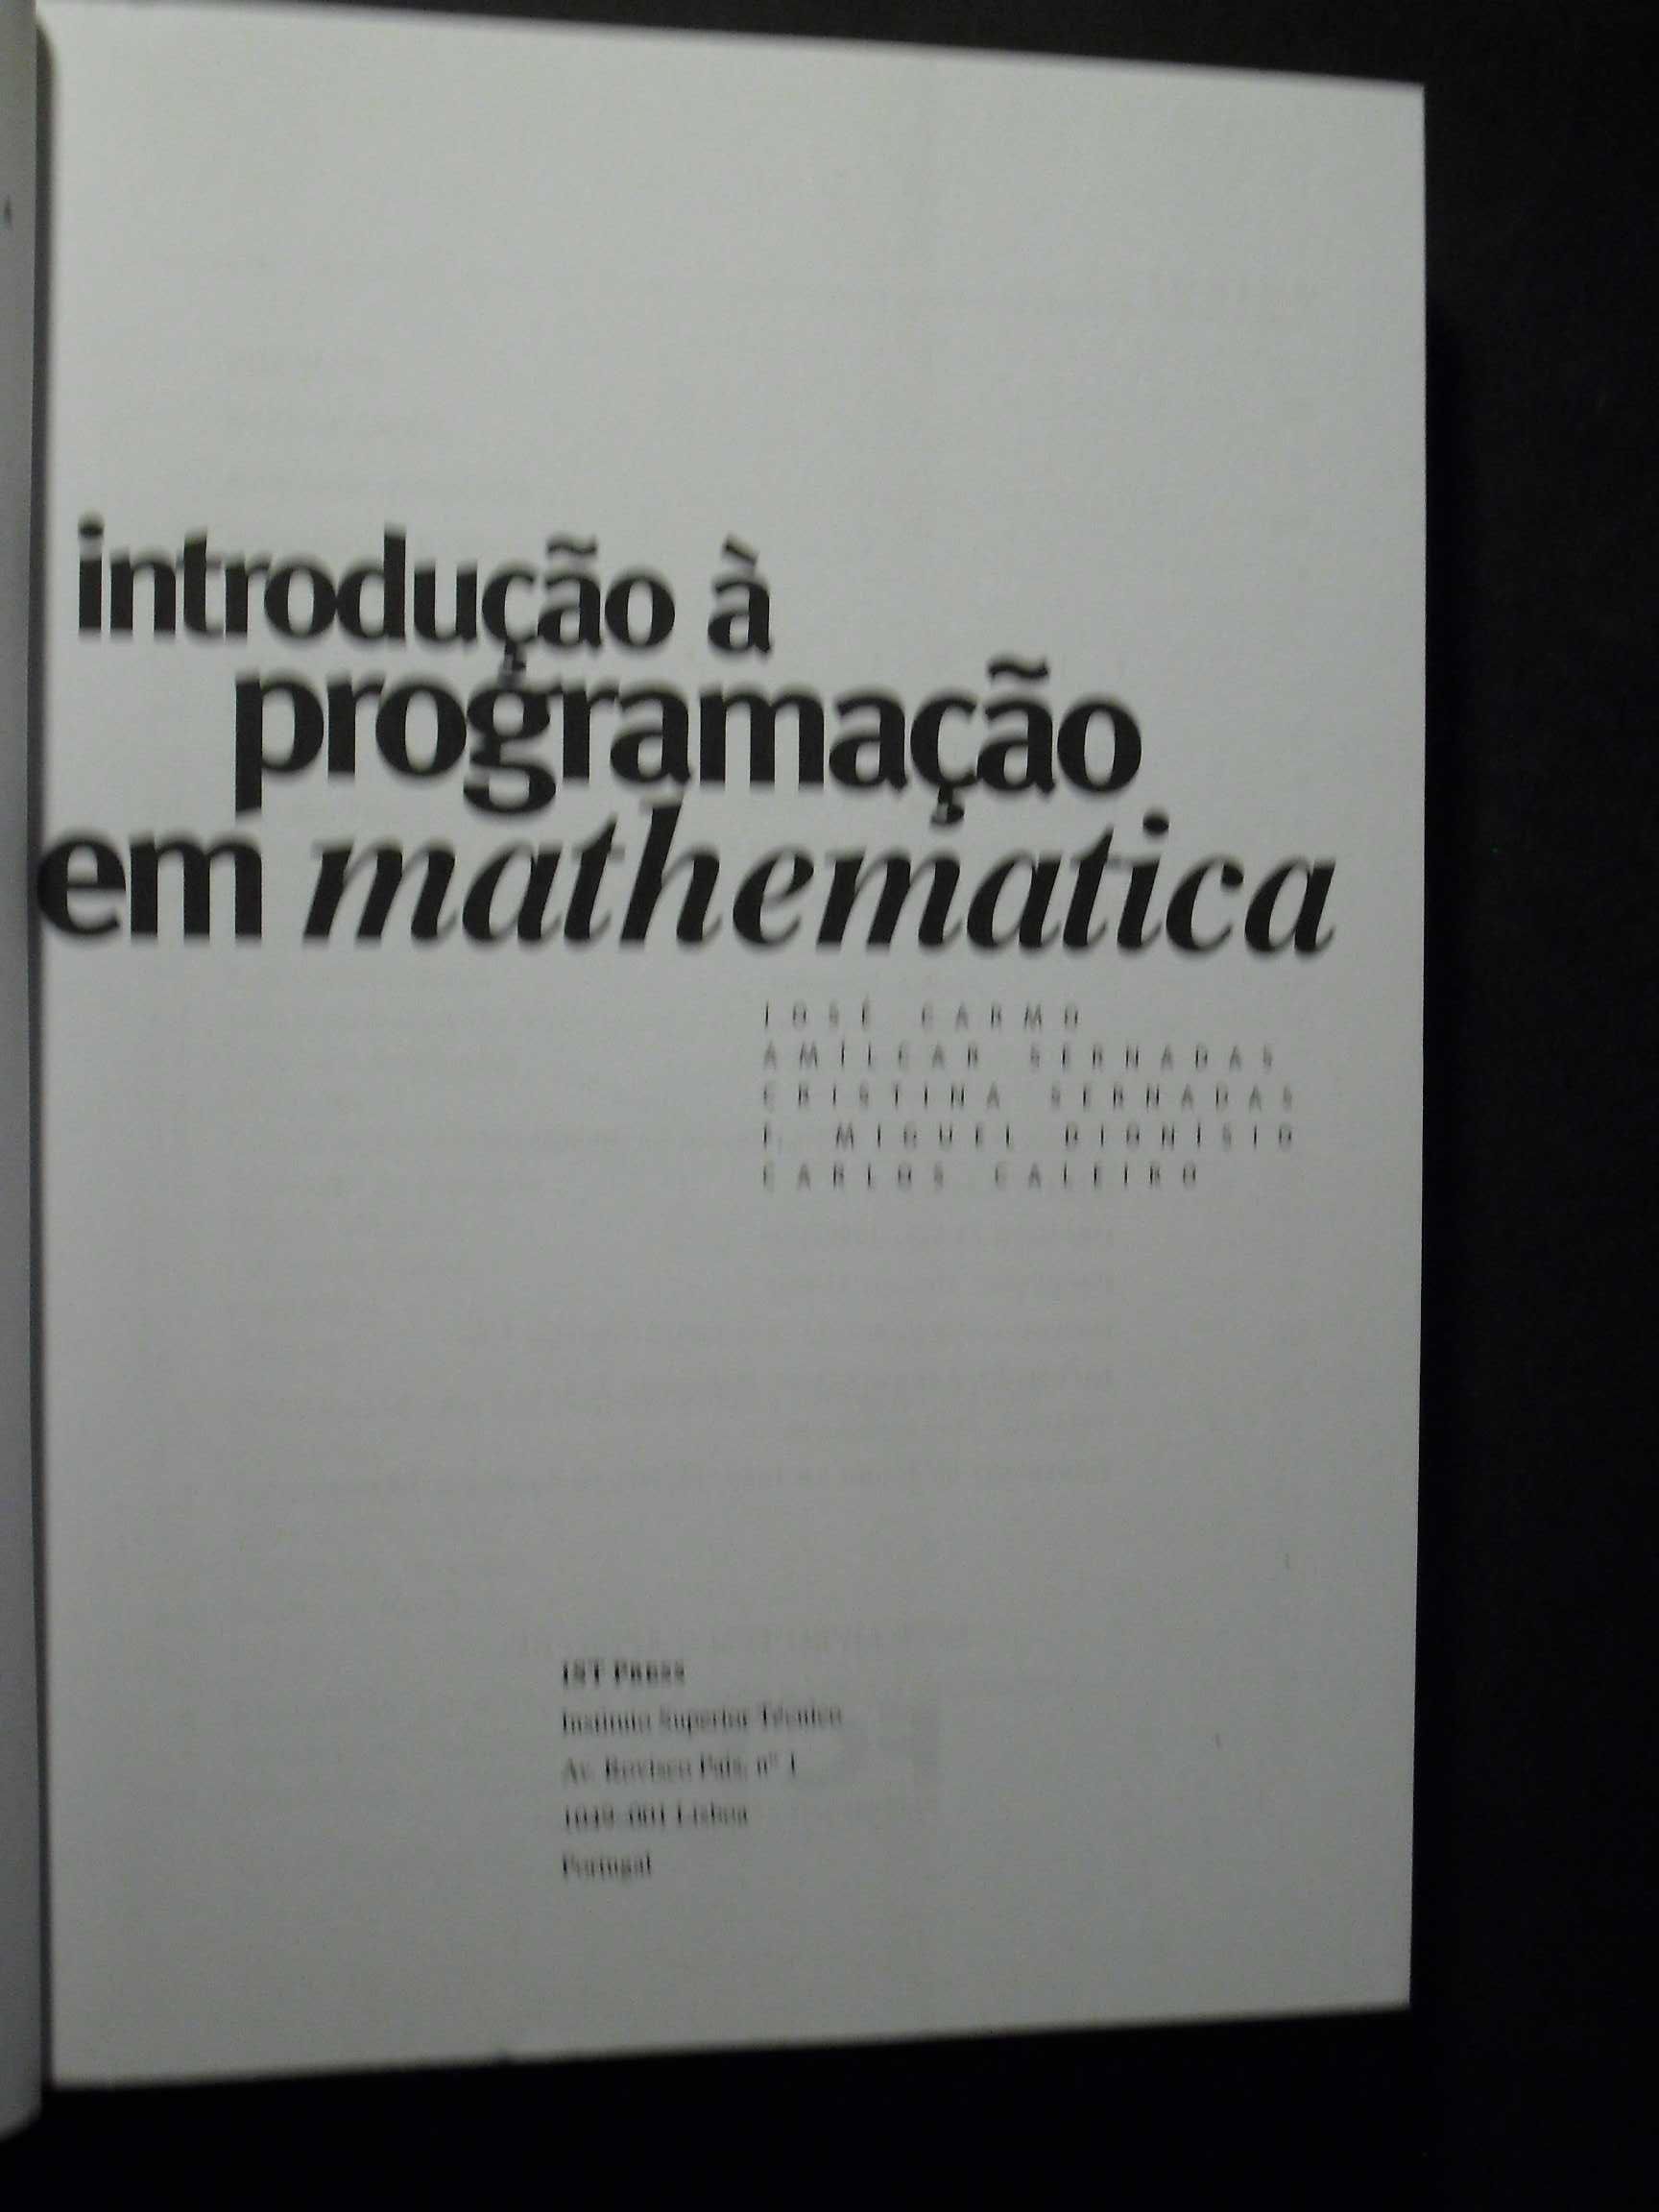 Carmo (José-Amílcar Sernada);Introdução à Programação em Mathematica